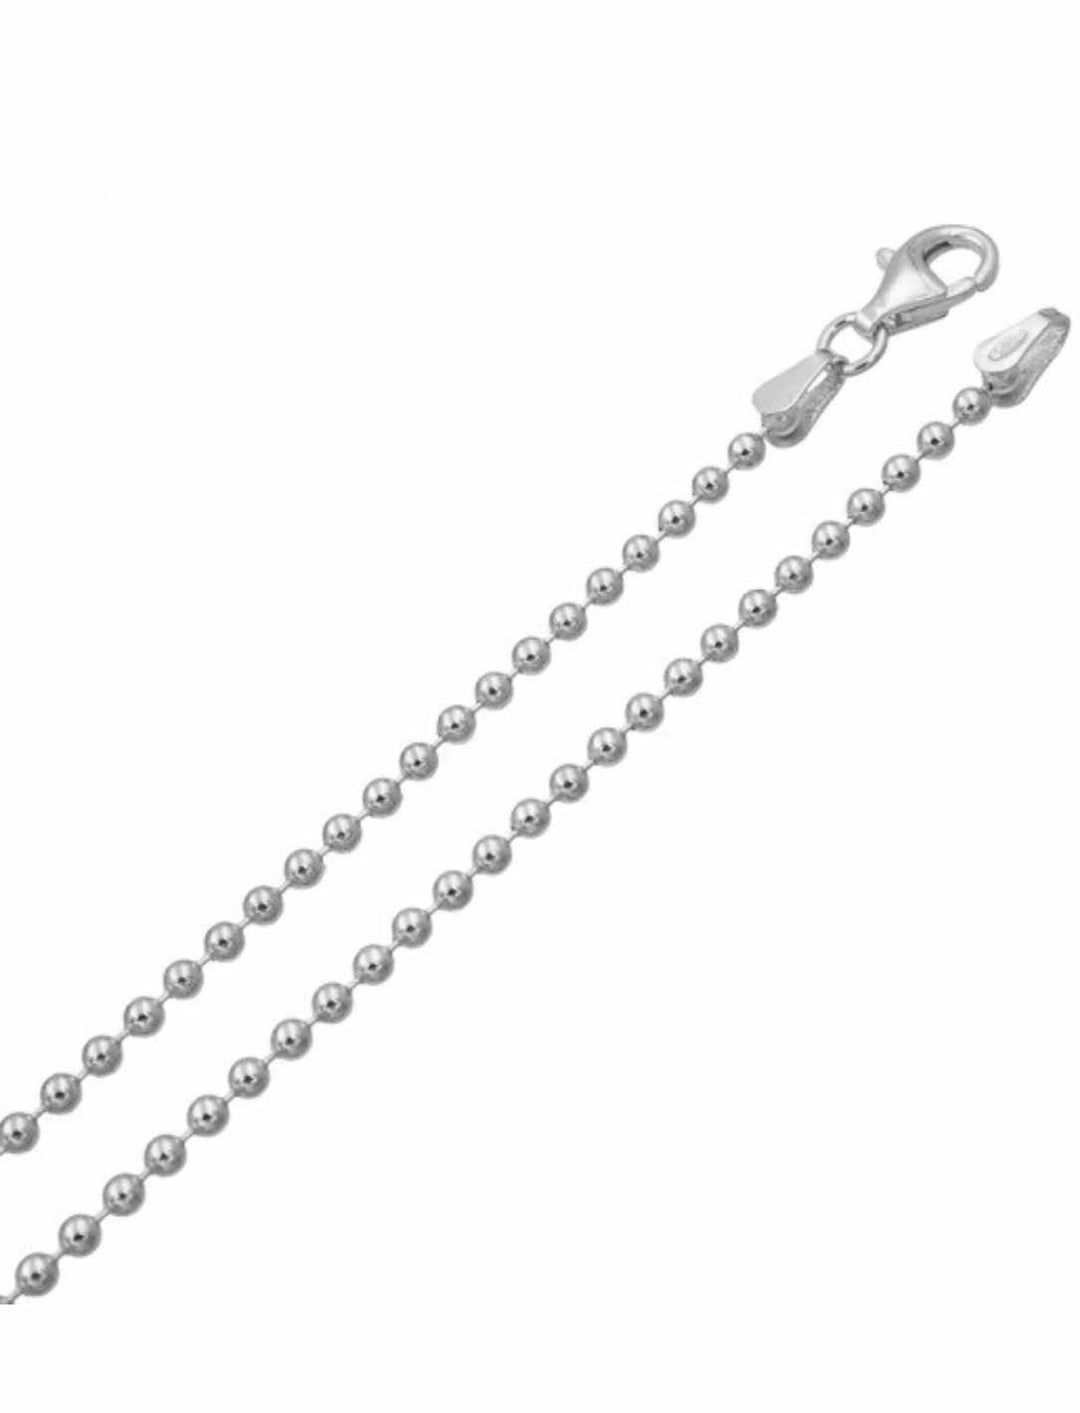 Glänzende 925er Sterling Silber Kugelkette 'Schimmerndes Kugelgeflecht' mit Karabinerverschluss, präsentiert auf einem reinweißen Hintergrund.